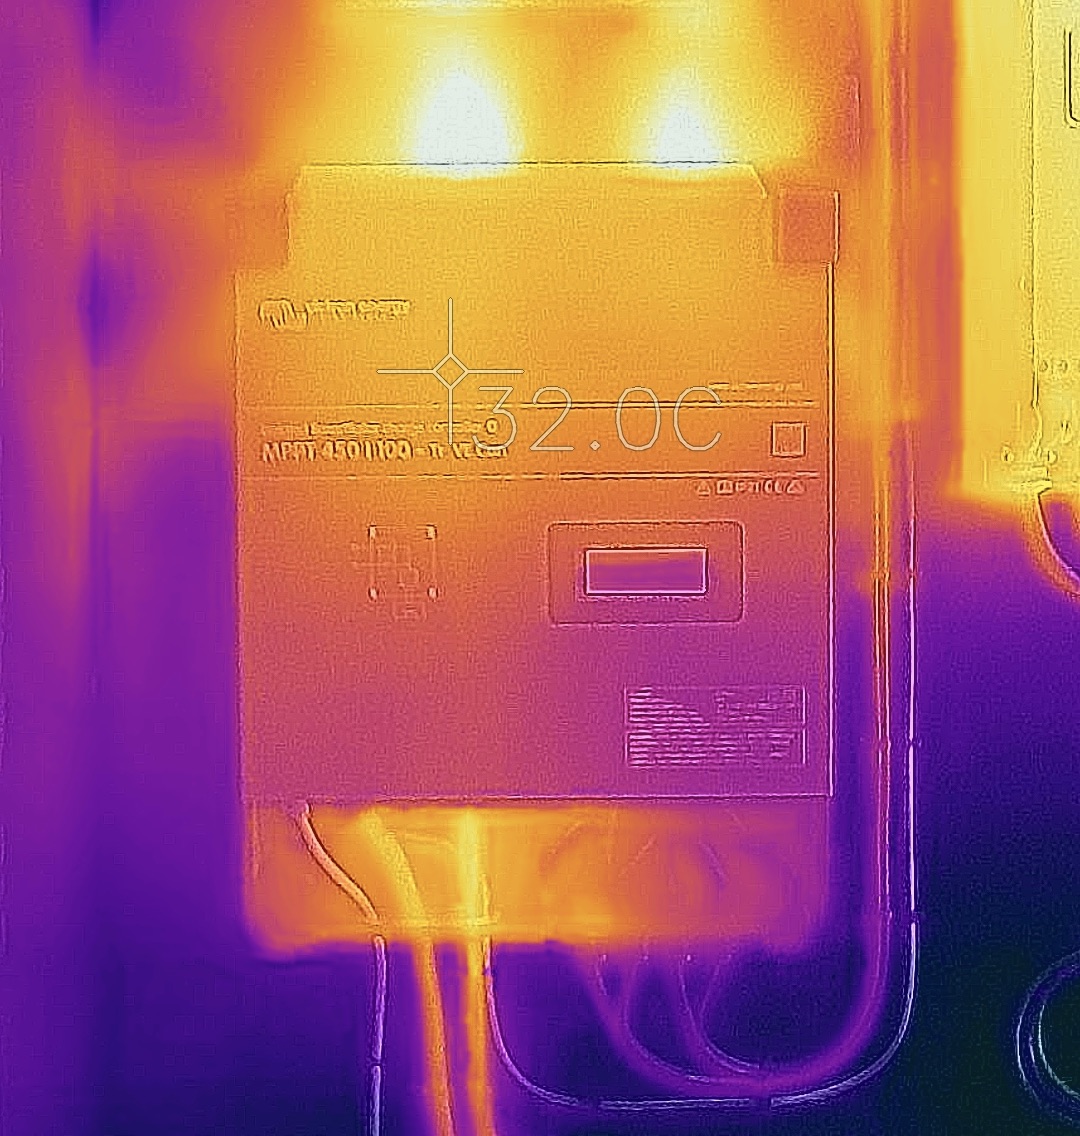 Immagine termica delle zone di riscaldamento del MPPT RS che devono essere lasciate libere.